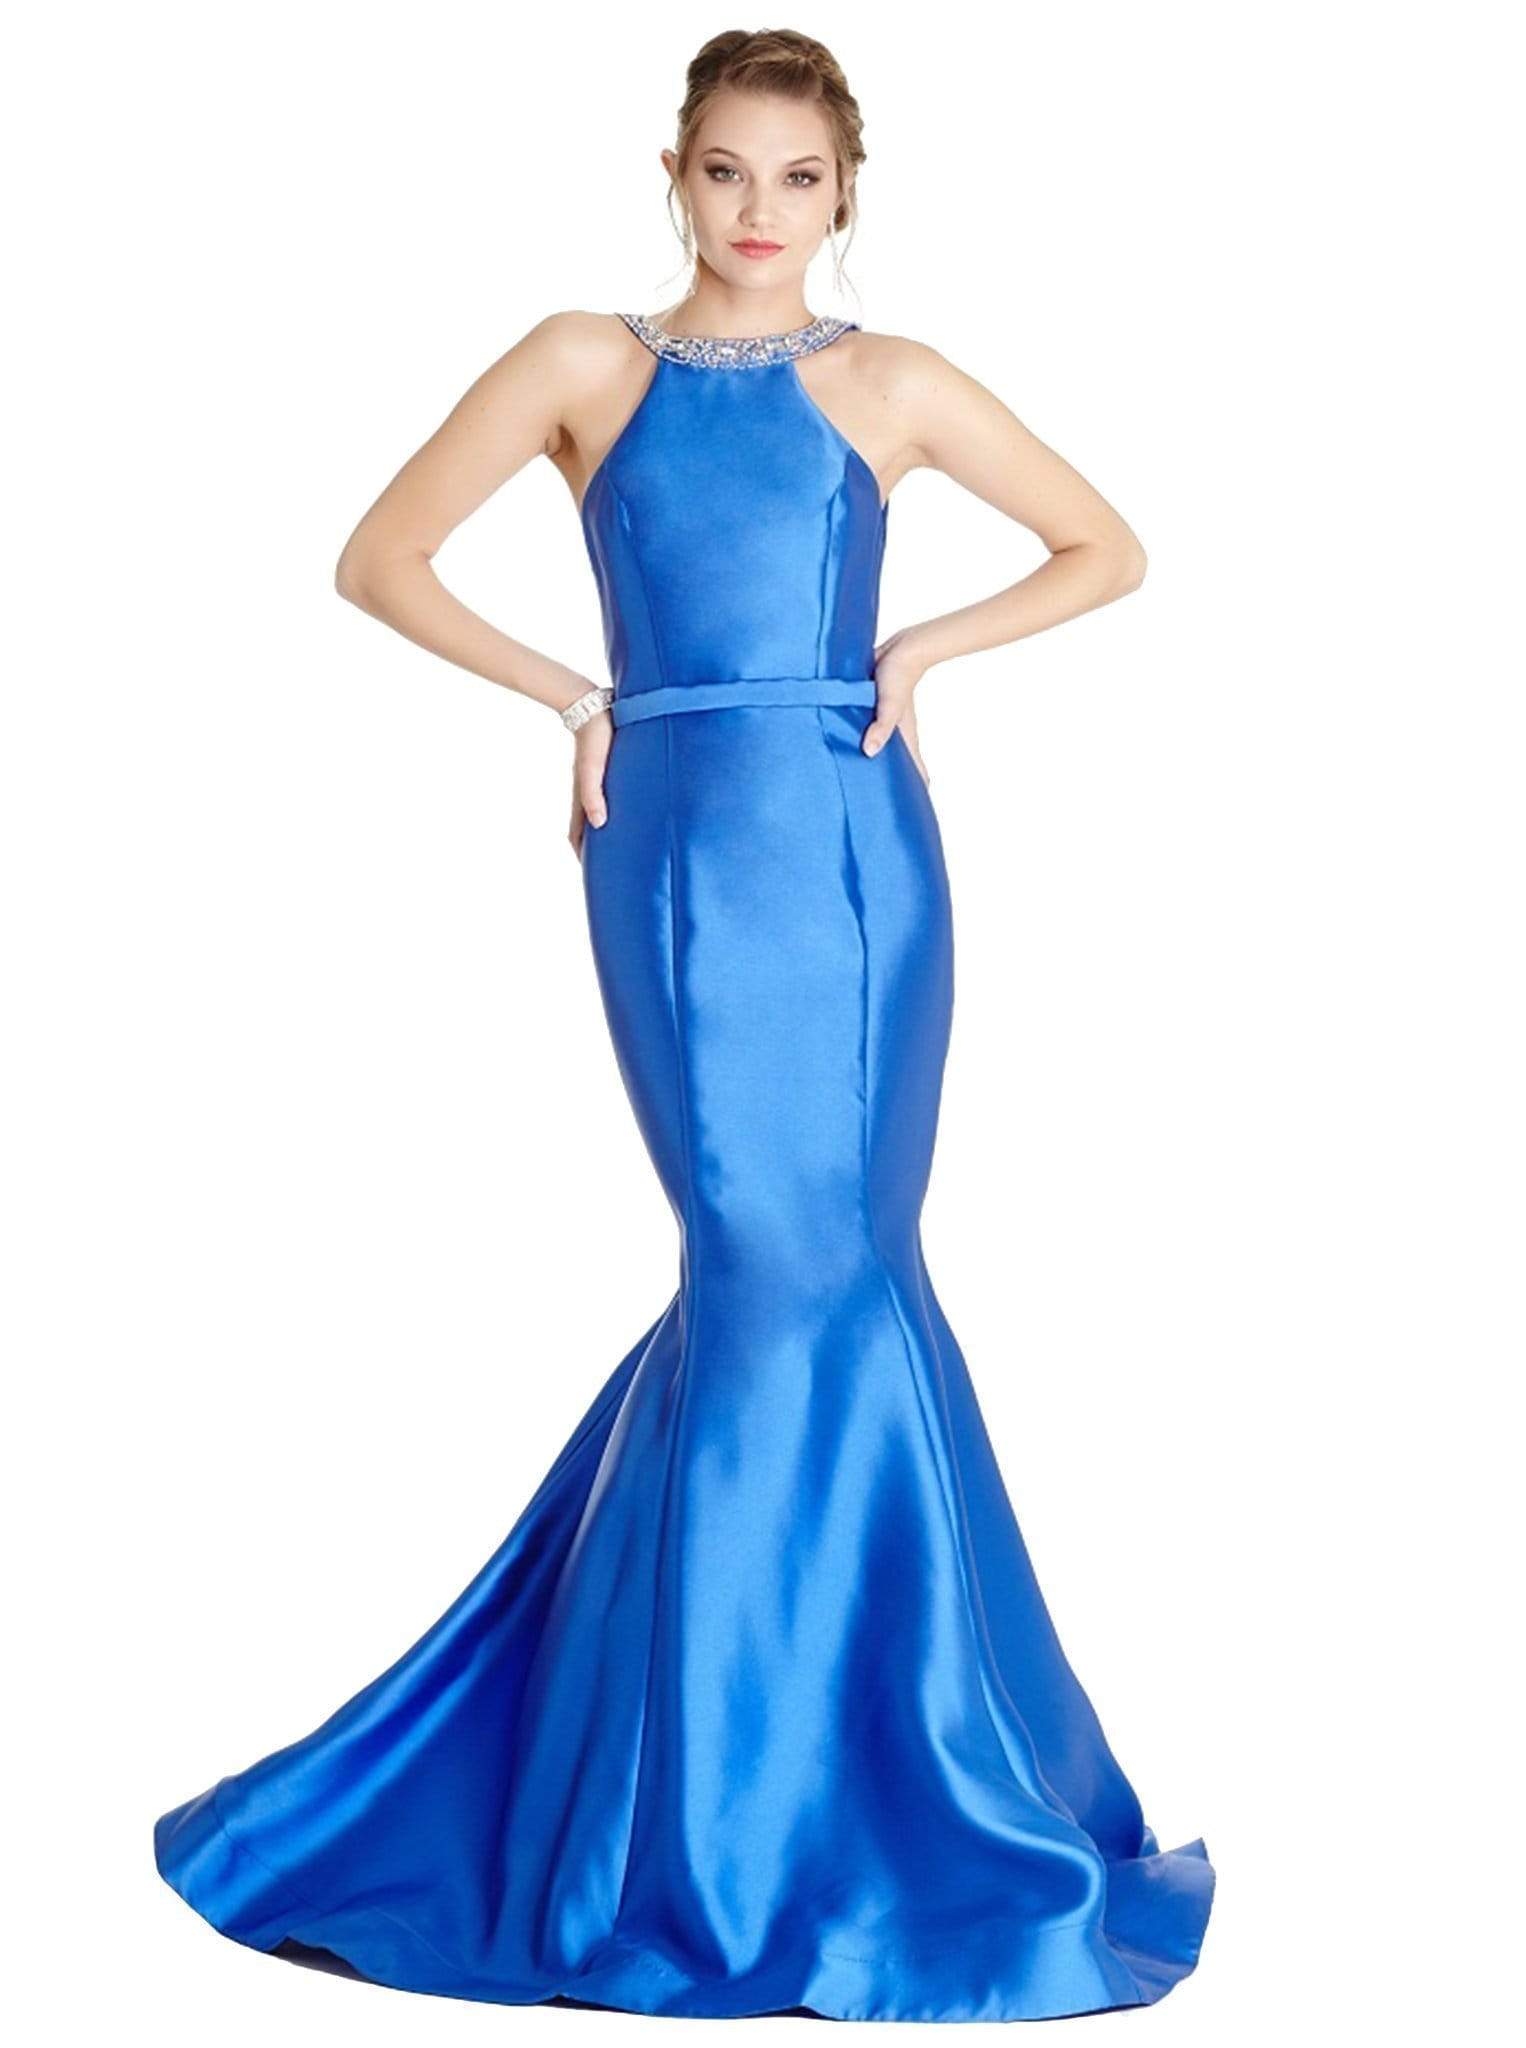 Image of Aspeed Design - Dazzling Halter Neck Affordable Prom Dress